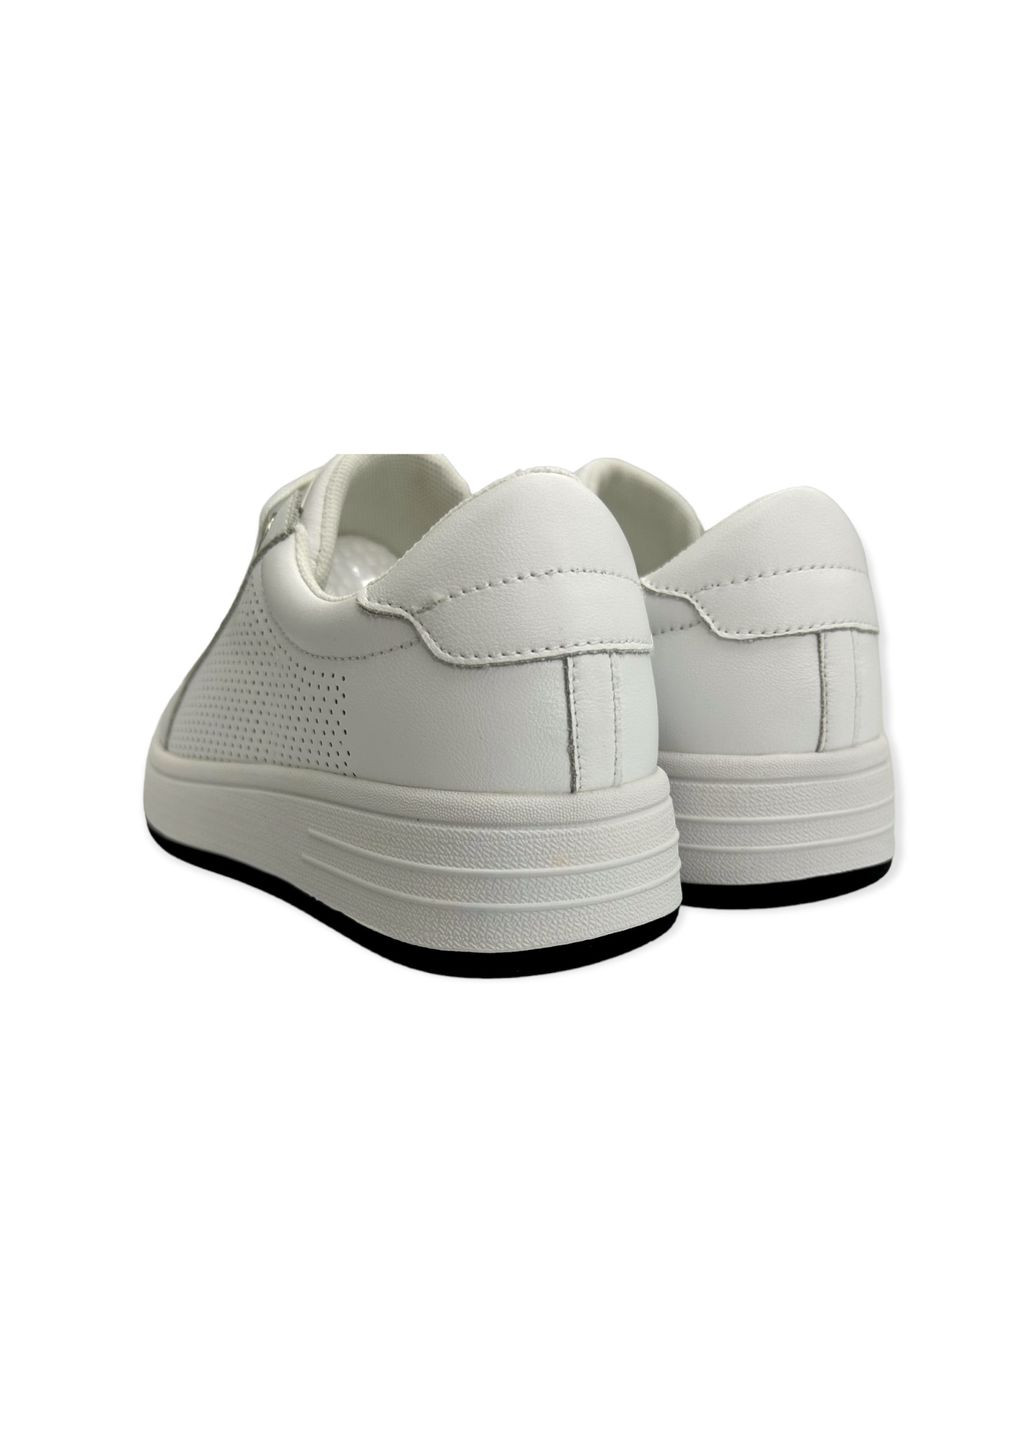 Белые всесезонные кроссовки (р) кожа 0-1-1-yc-8860-1 Lifexpert